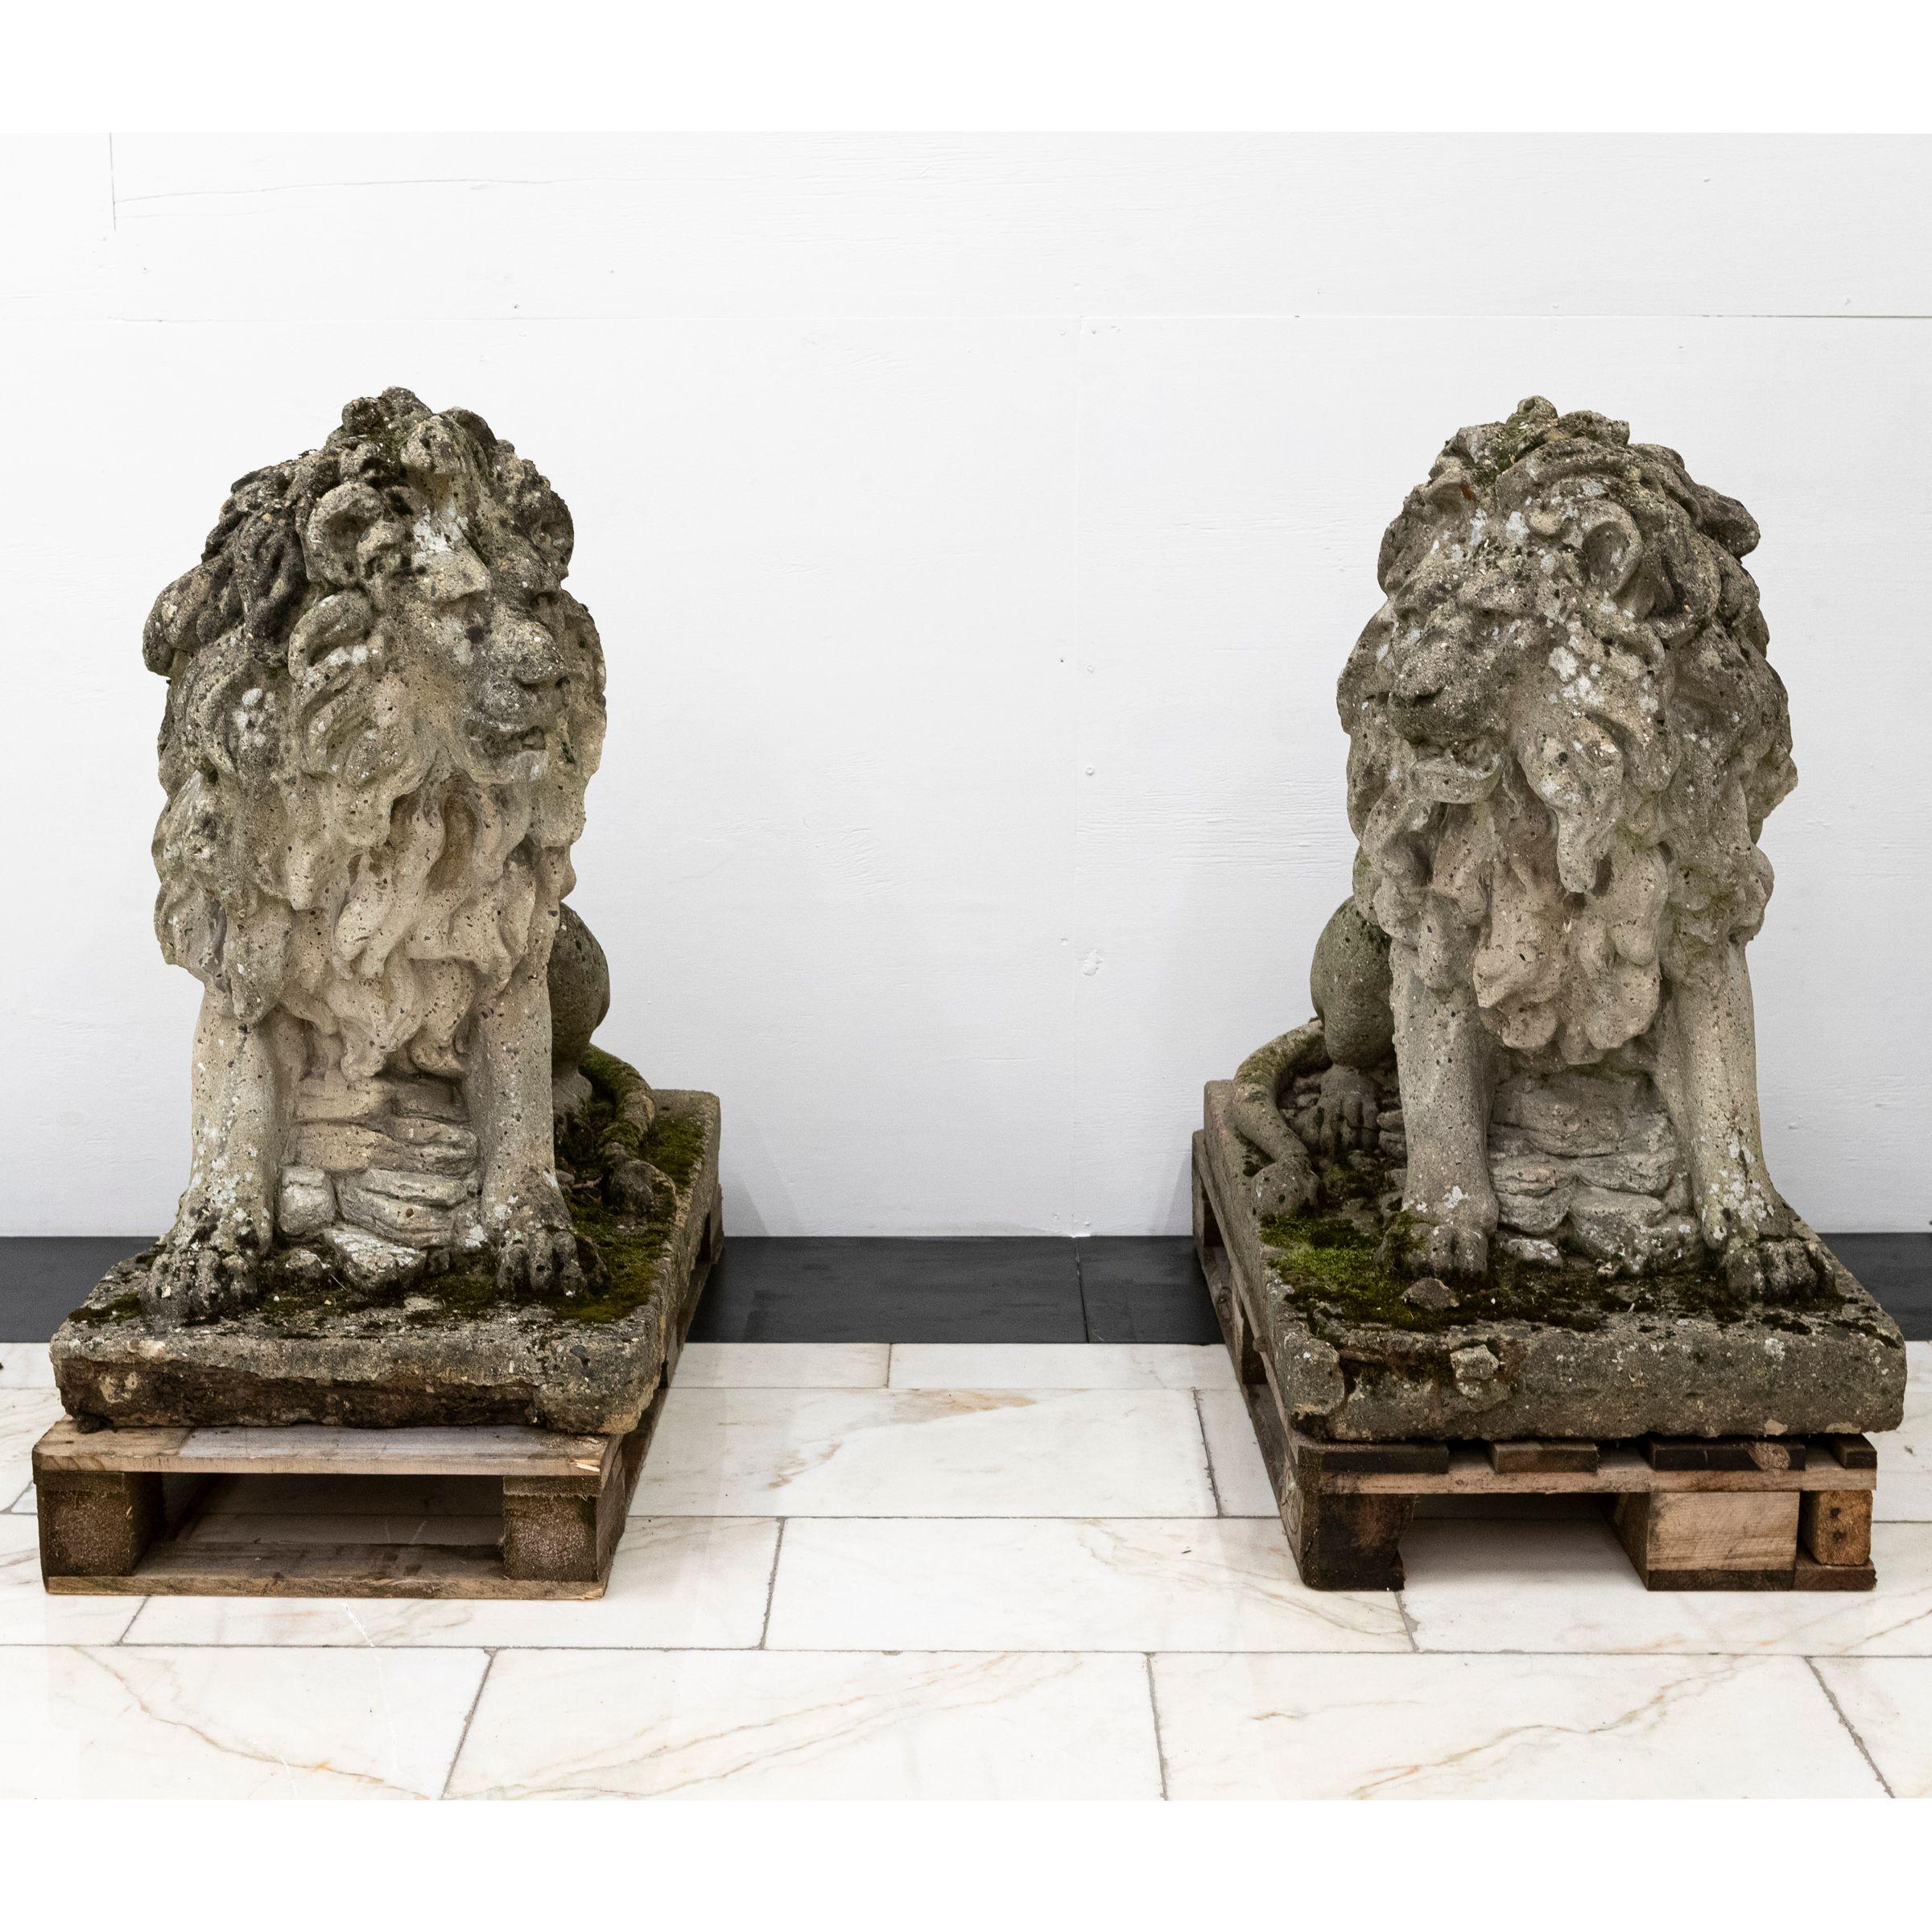 Une paire impressionnante et imposante de lions en pierre recyclée. 

Très détaillée, cette paire datant du milieu du XXe siècle présente une patine exceptionnelle et constituerait une pièce maîtresse pour l'entrée d'une propriété ou un élément de